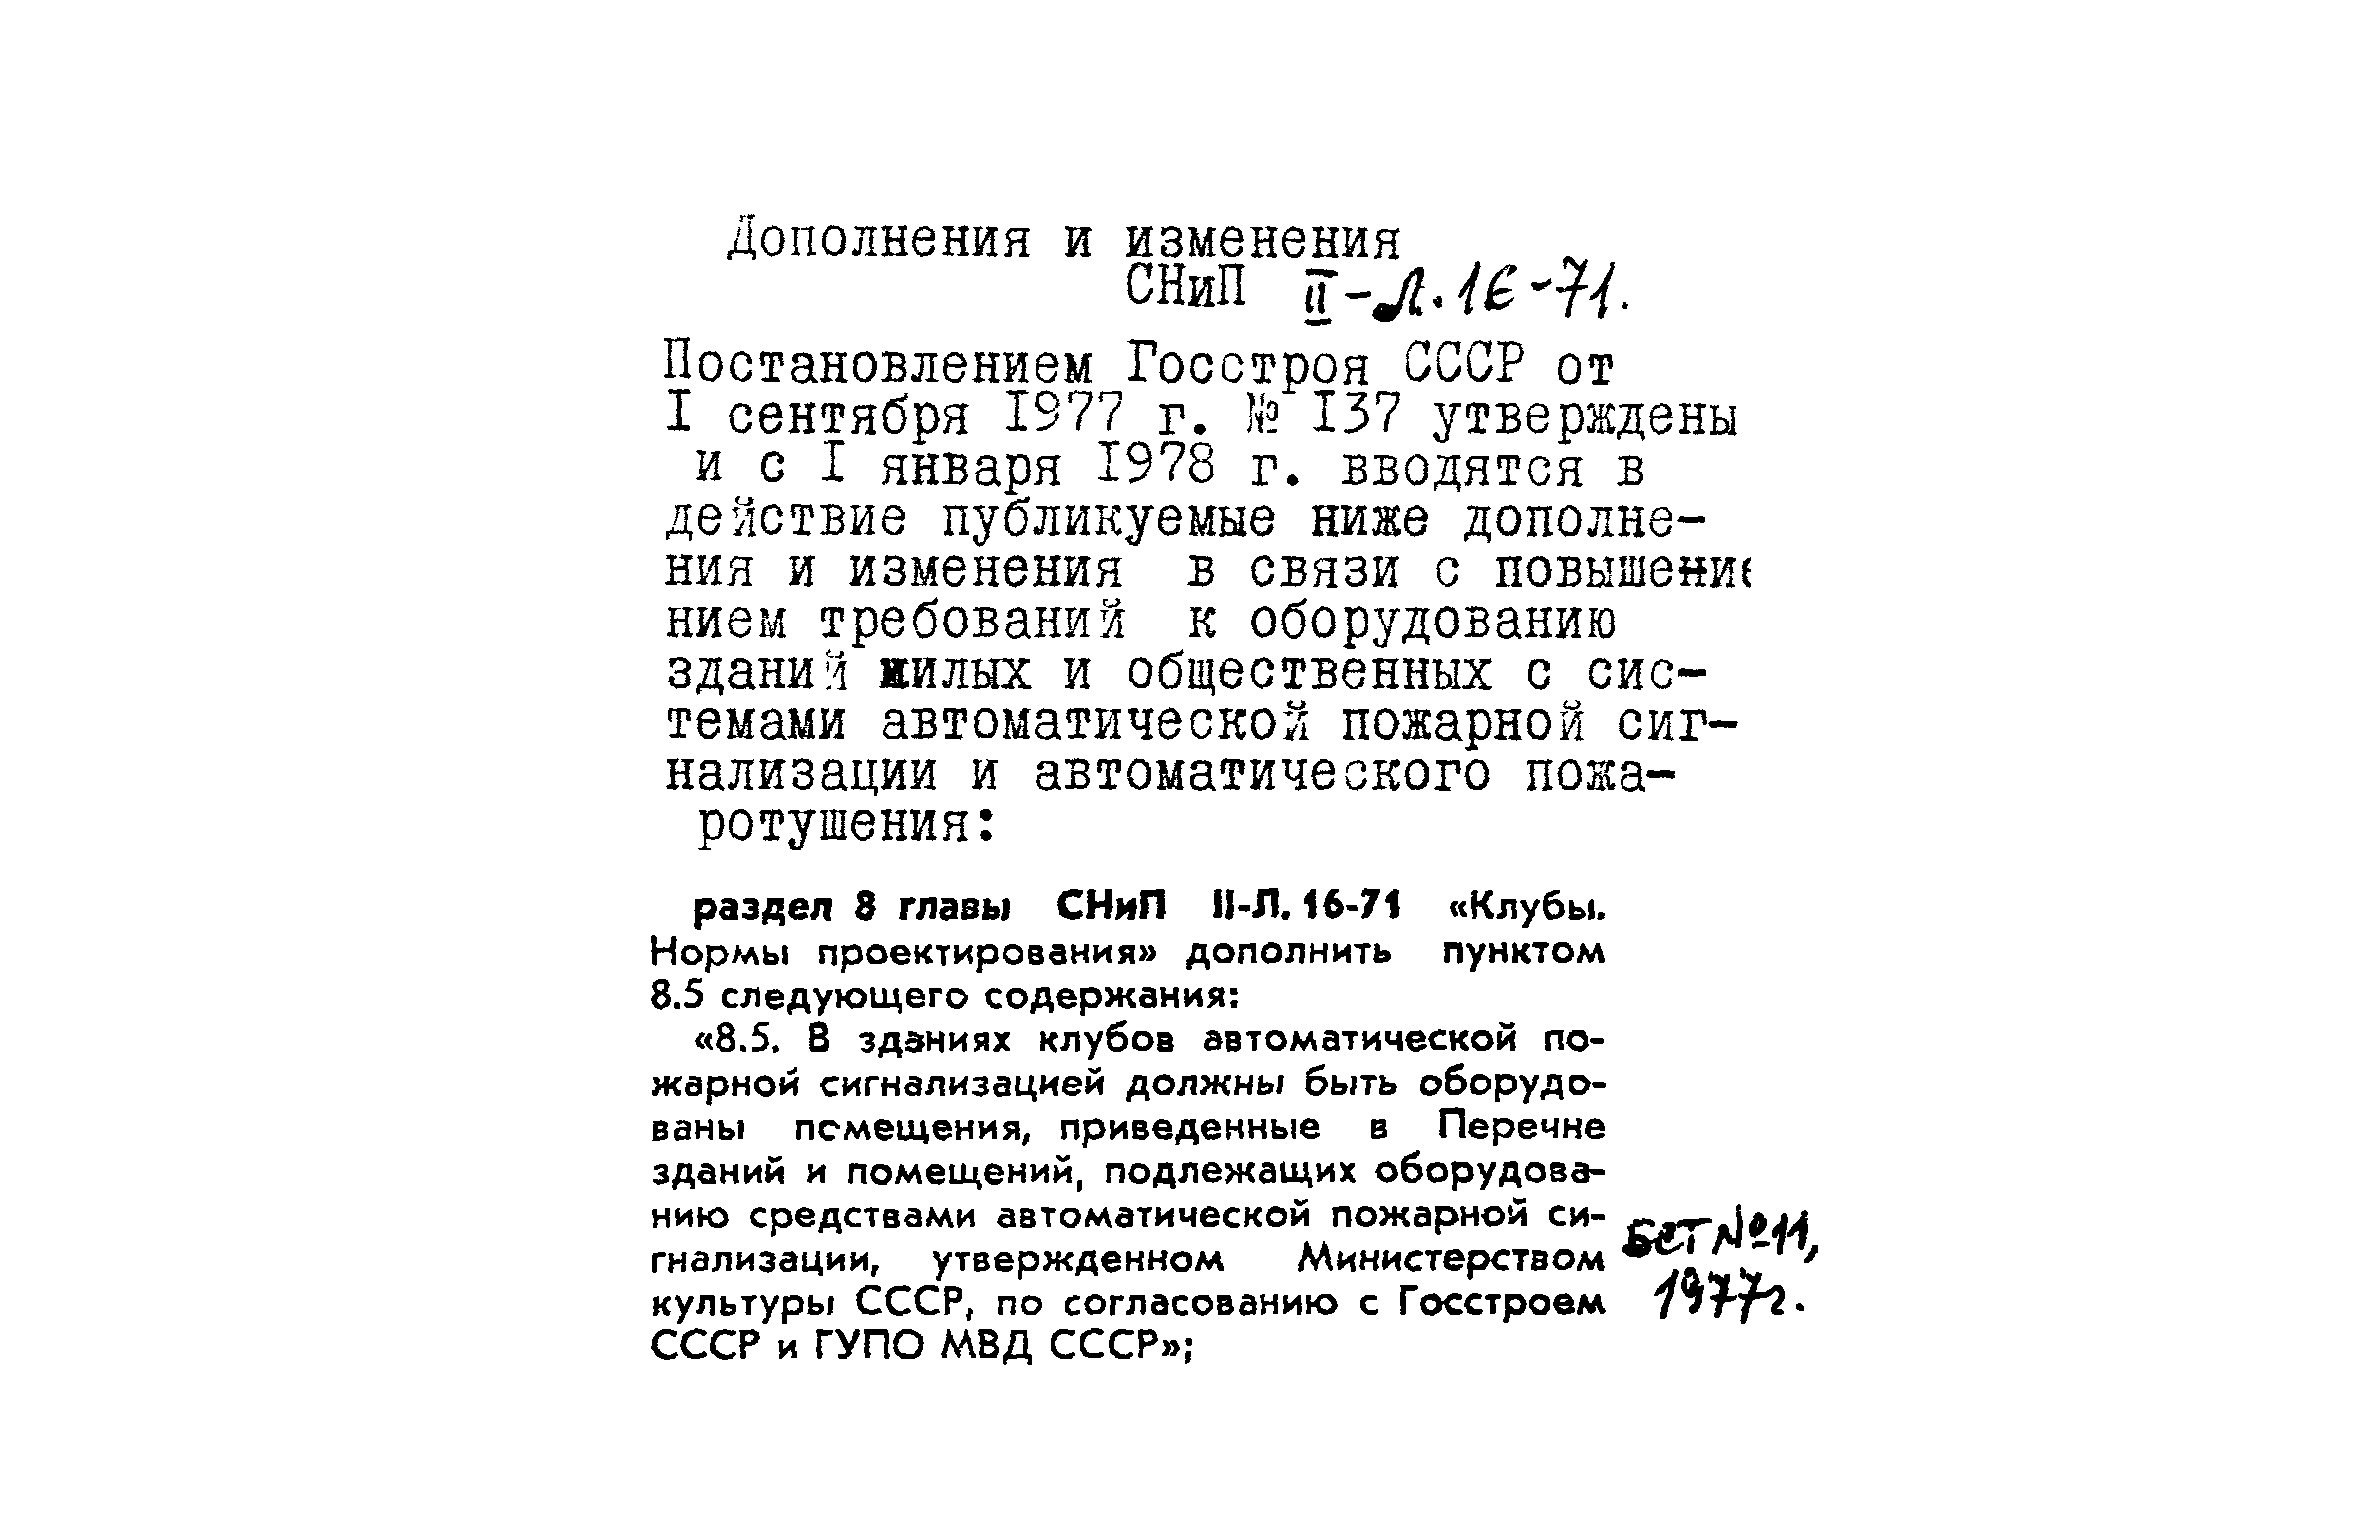 СНиП II-Л.16-71